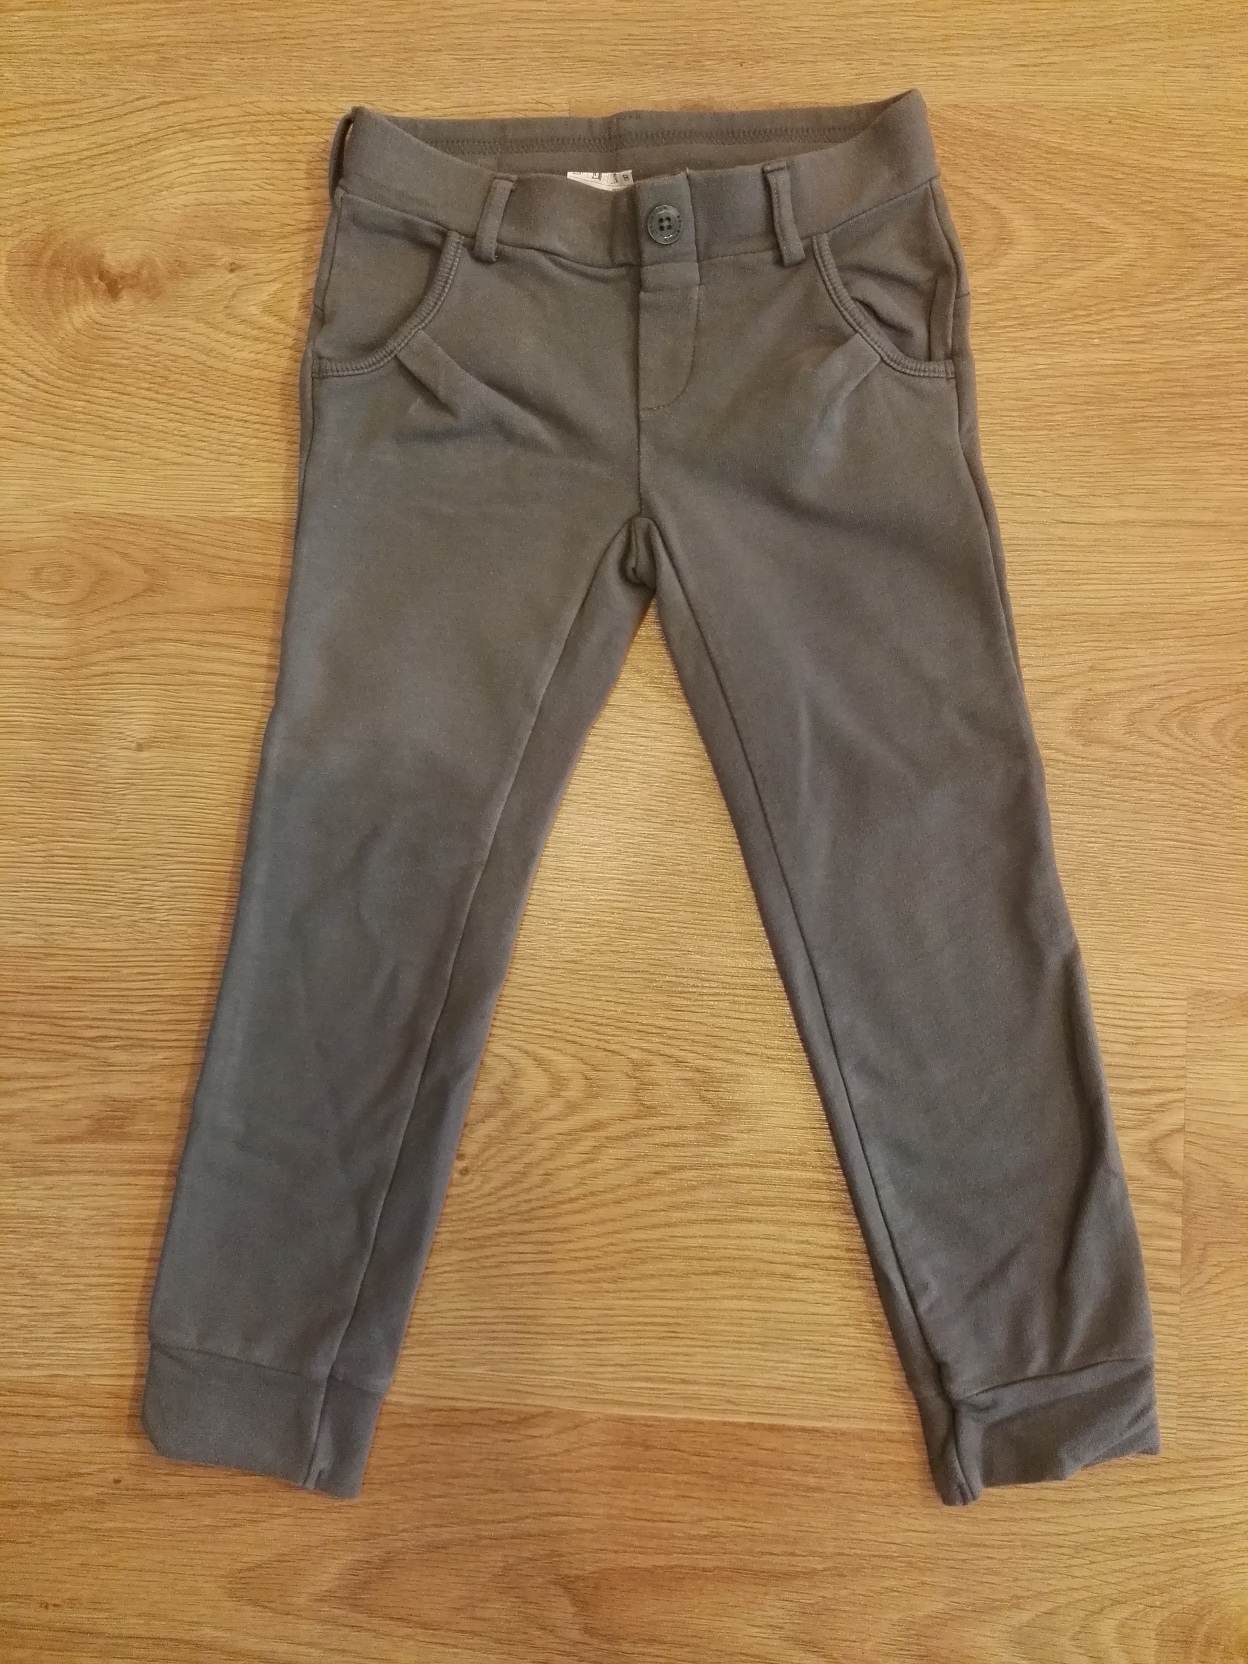 Spodnie bawełniane UC of Benetton r. 100 cm 3-4 L